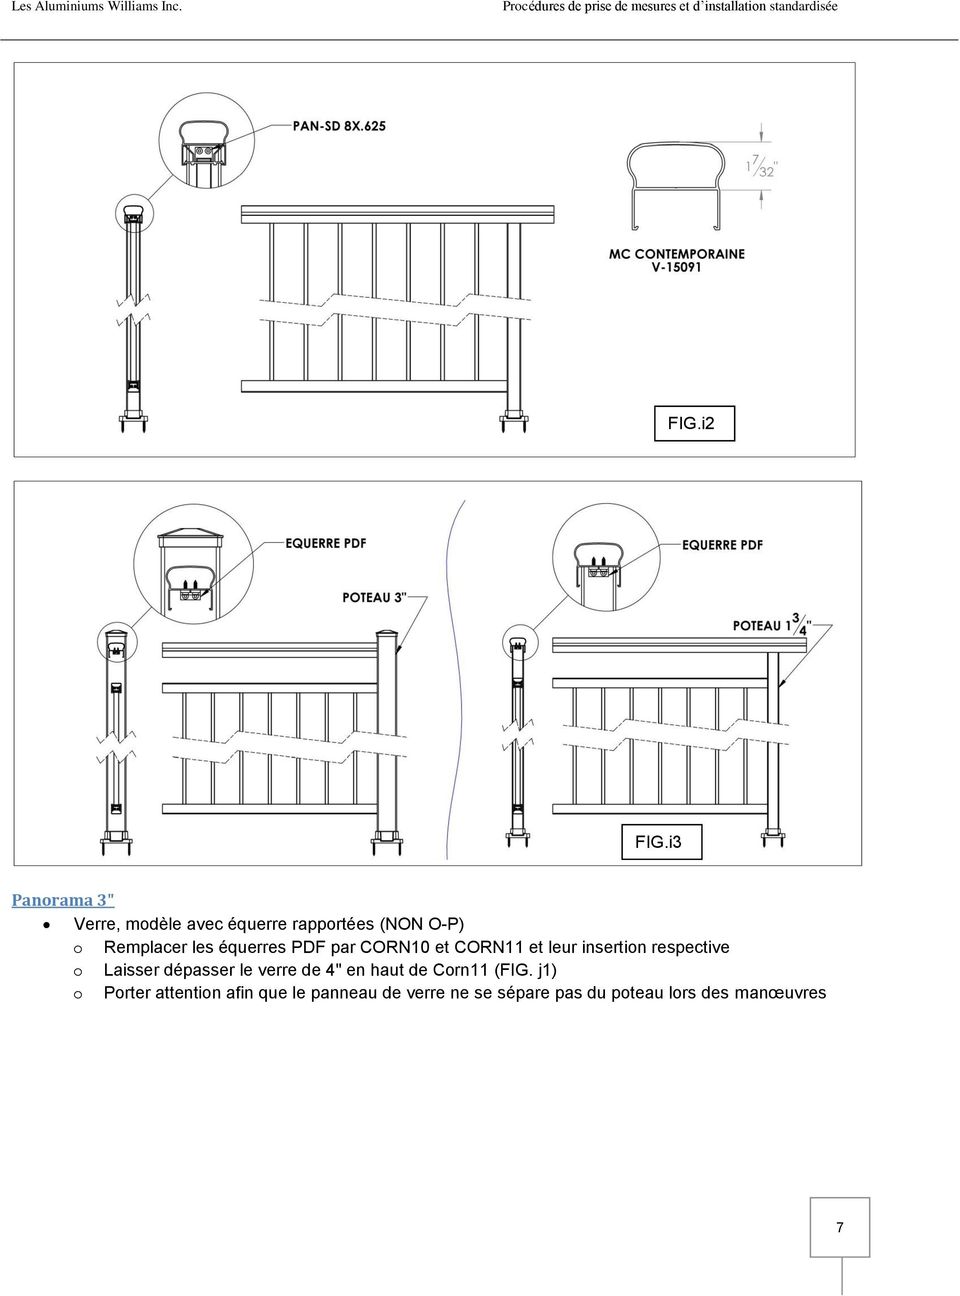 les équerres PDF par CORN10 et CORN11 et leur insertion respective o Laisser